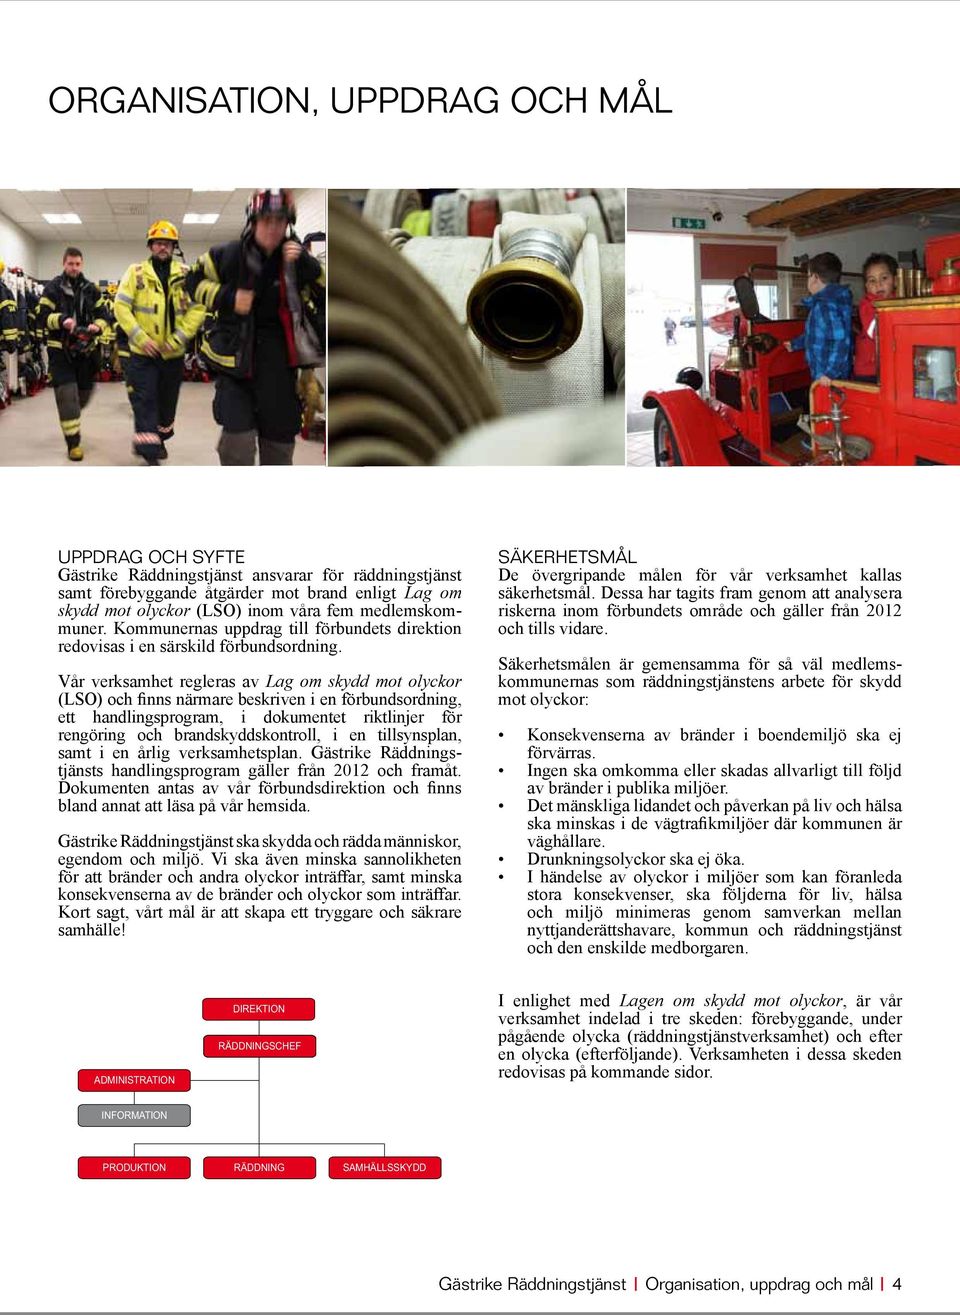 Vår verksamhet regleras av Lag om skydd mot olyckor (LSO) och finns närmare beskriven i en förbundsordning, ett handlingsprogram, i dokumentet riktlinjer för rengöring och brandskyddskontroll, i en